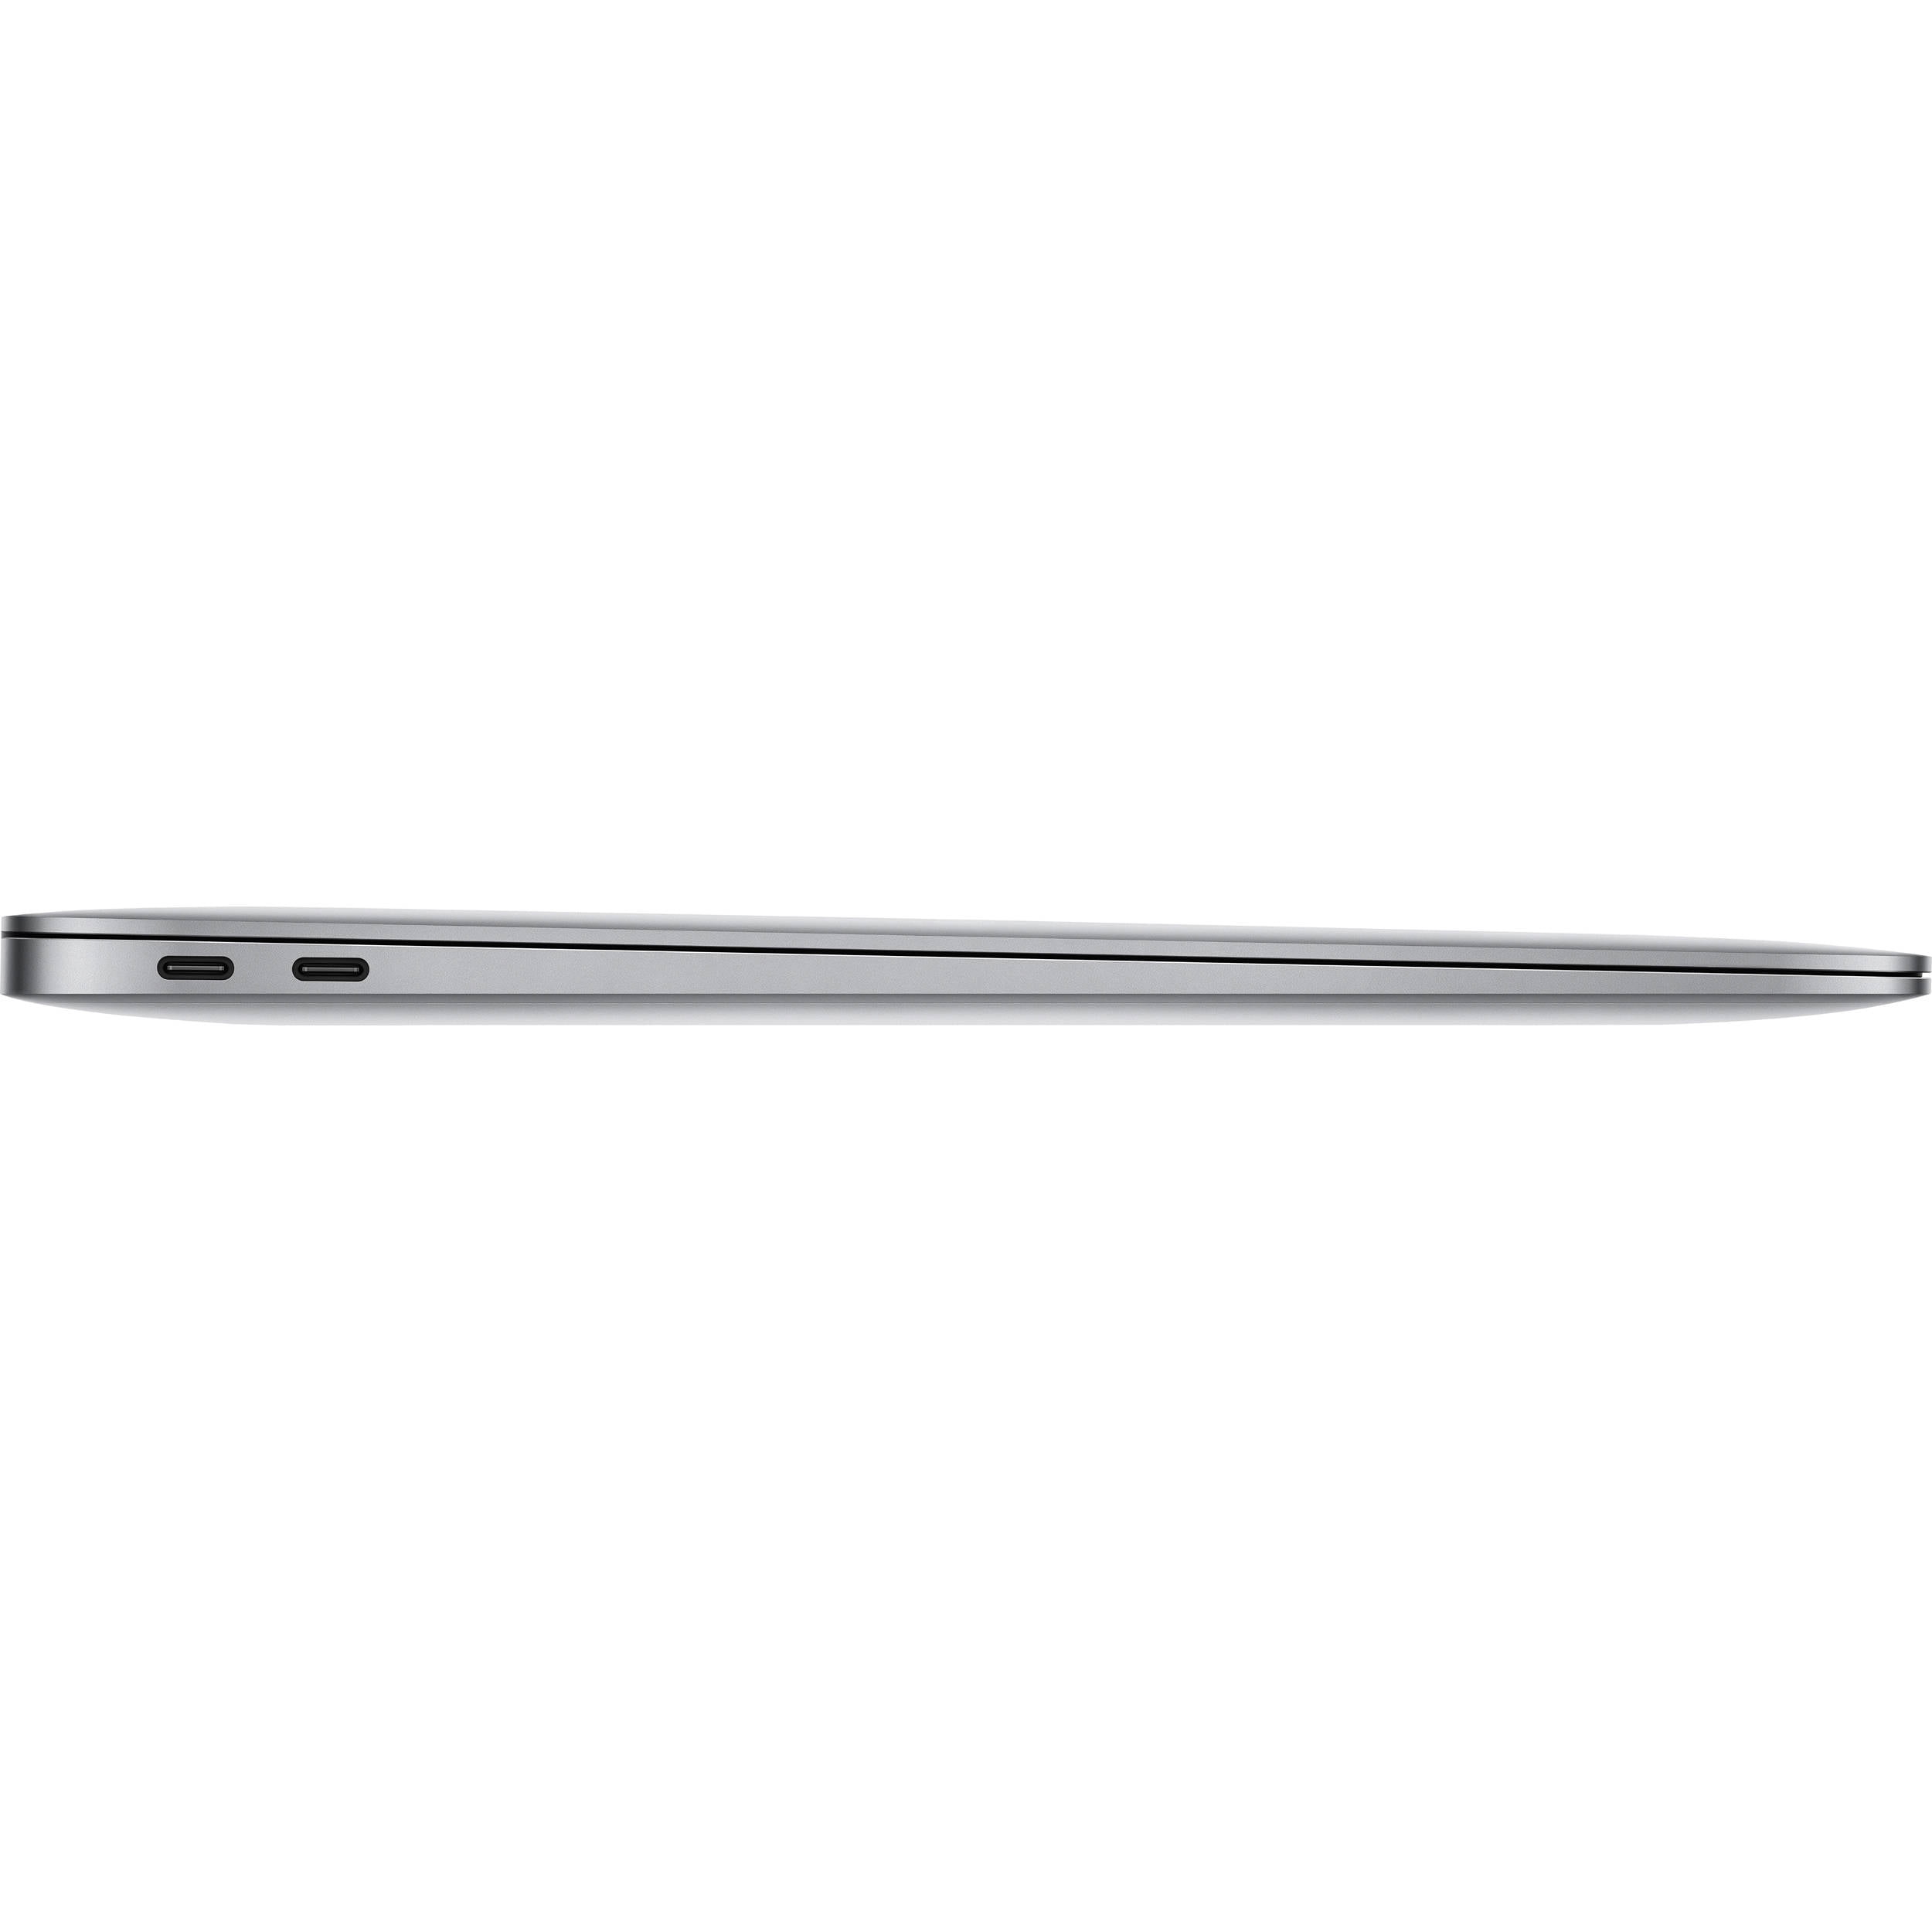 Apple MacBook Air Laptop, 13.3